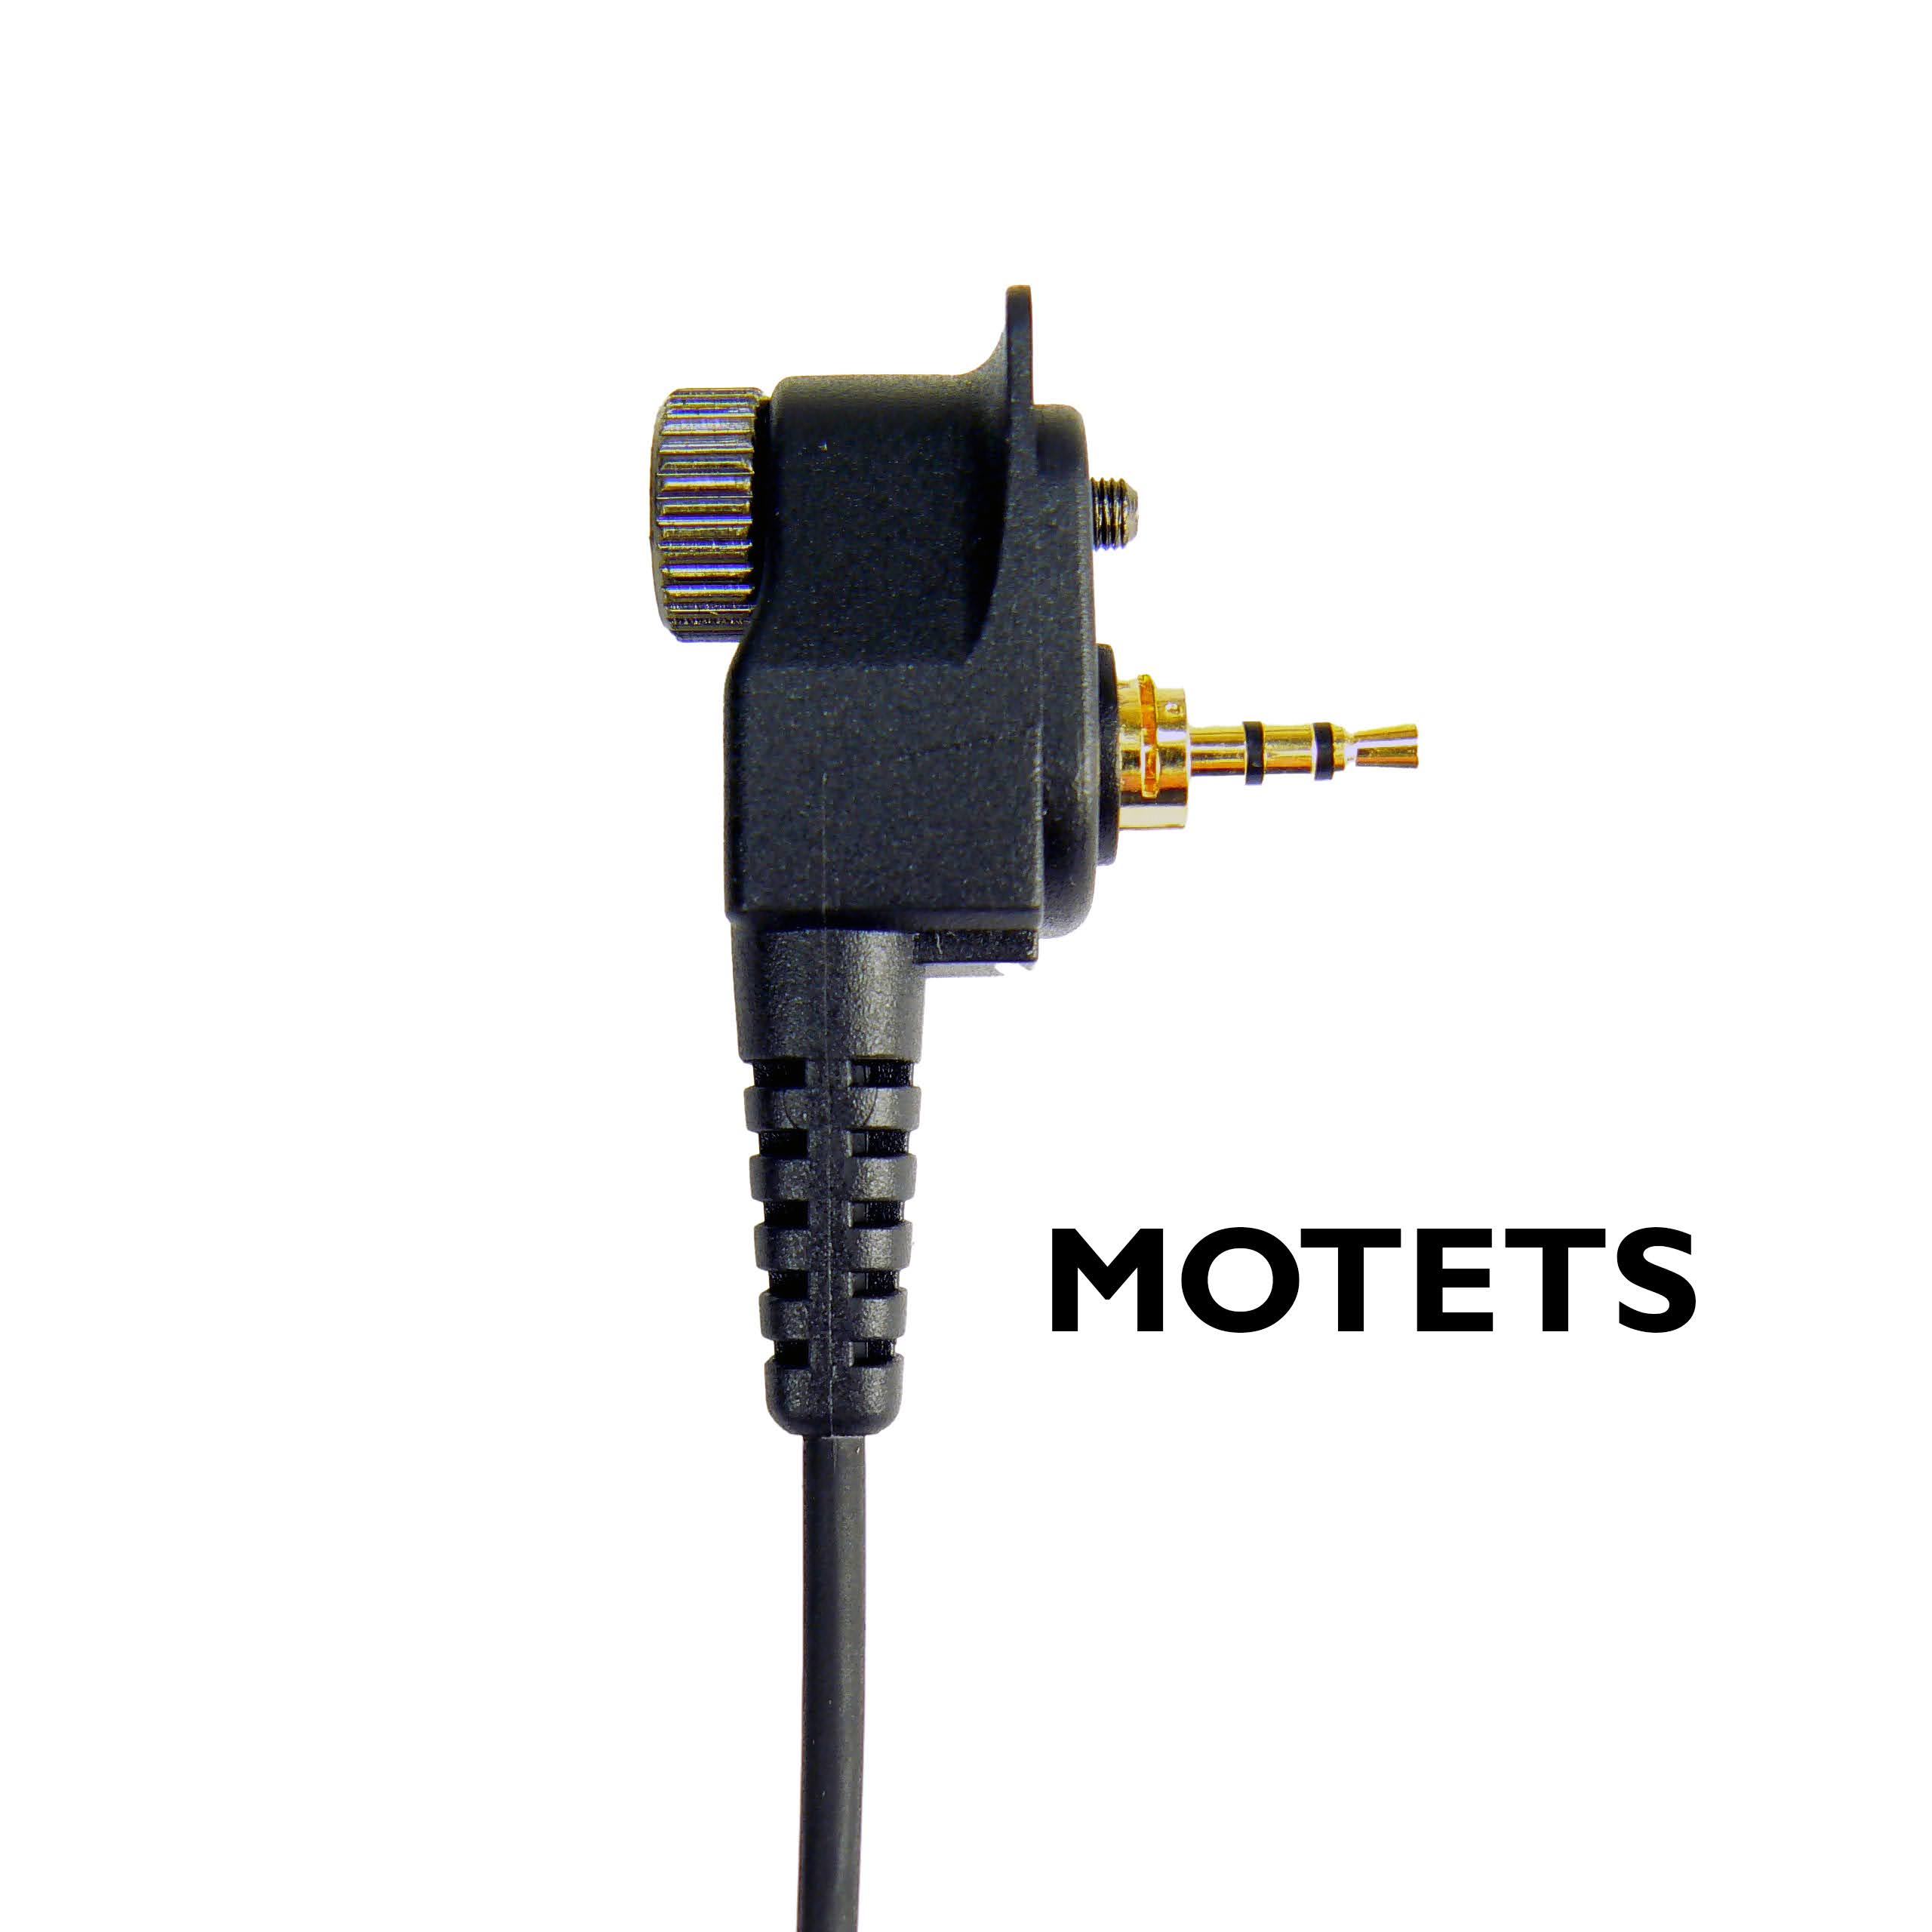 Motorola MOTETS plug ending